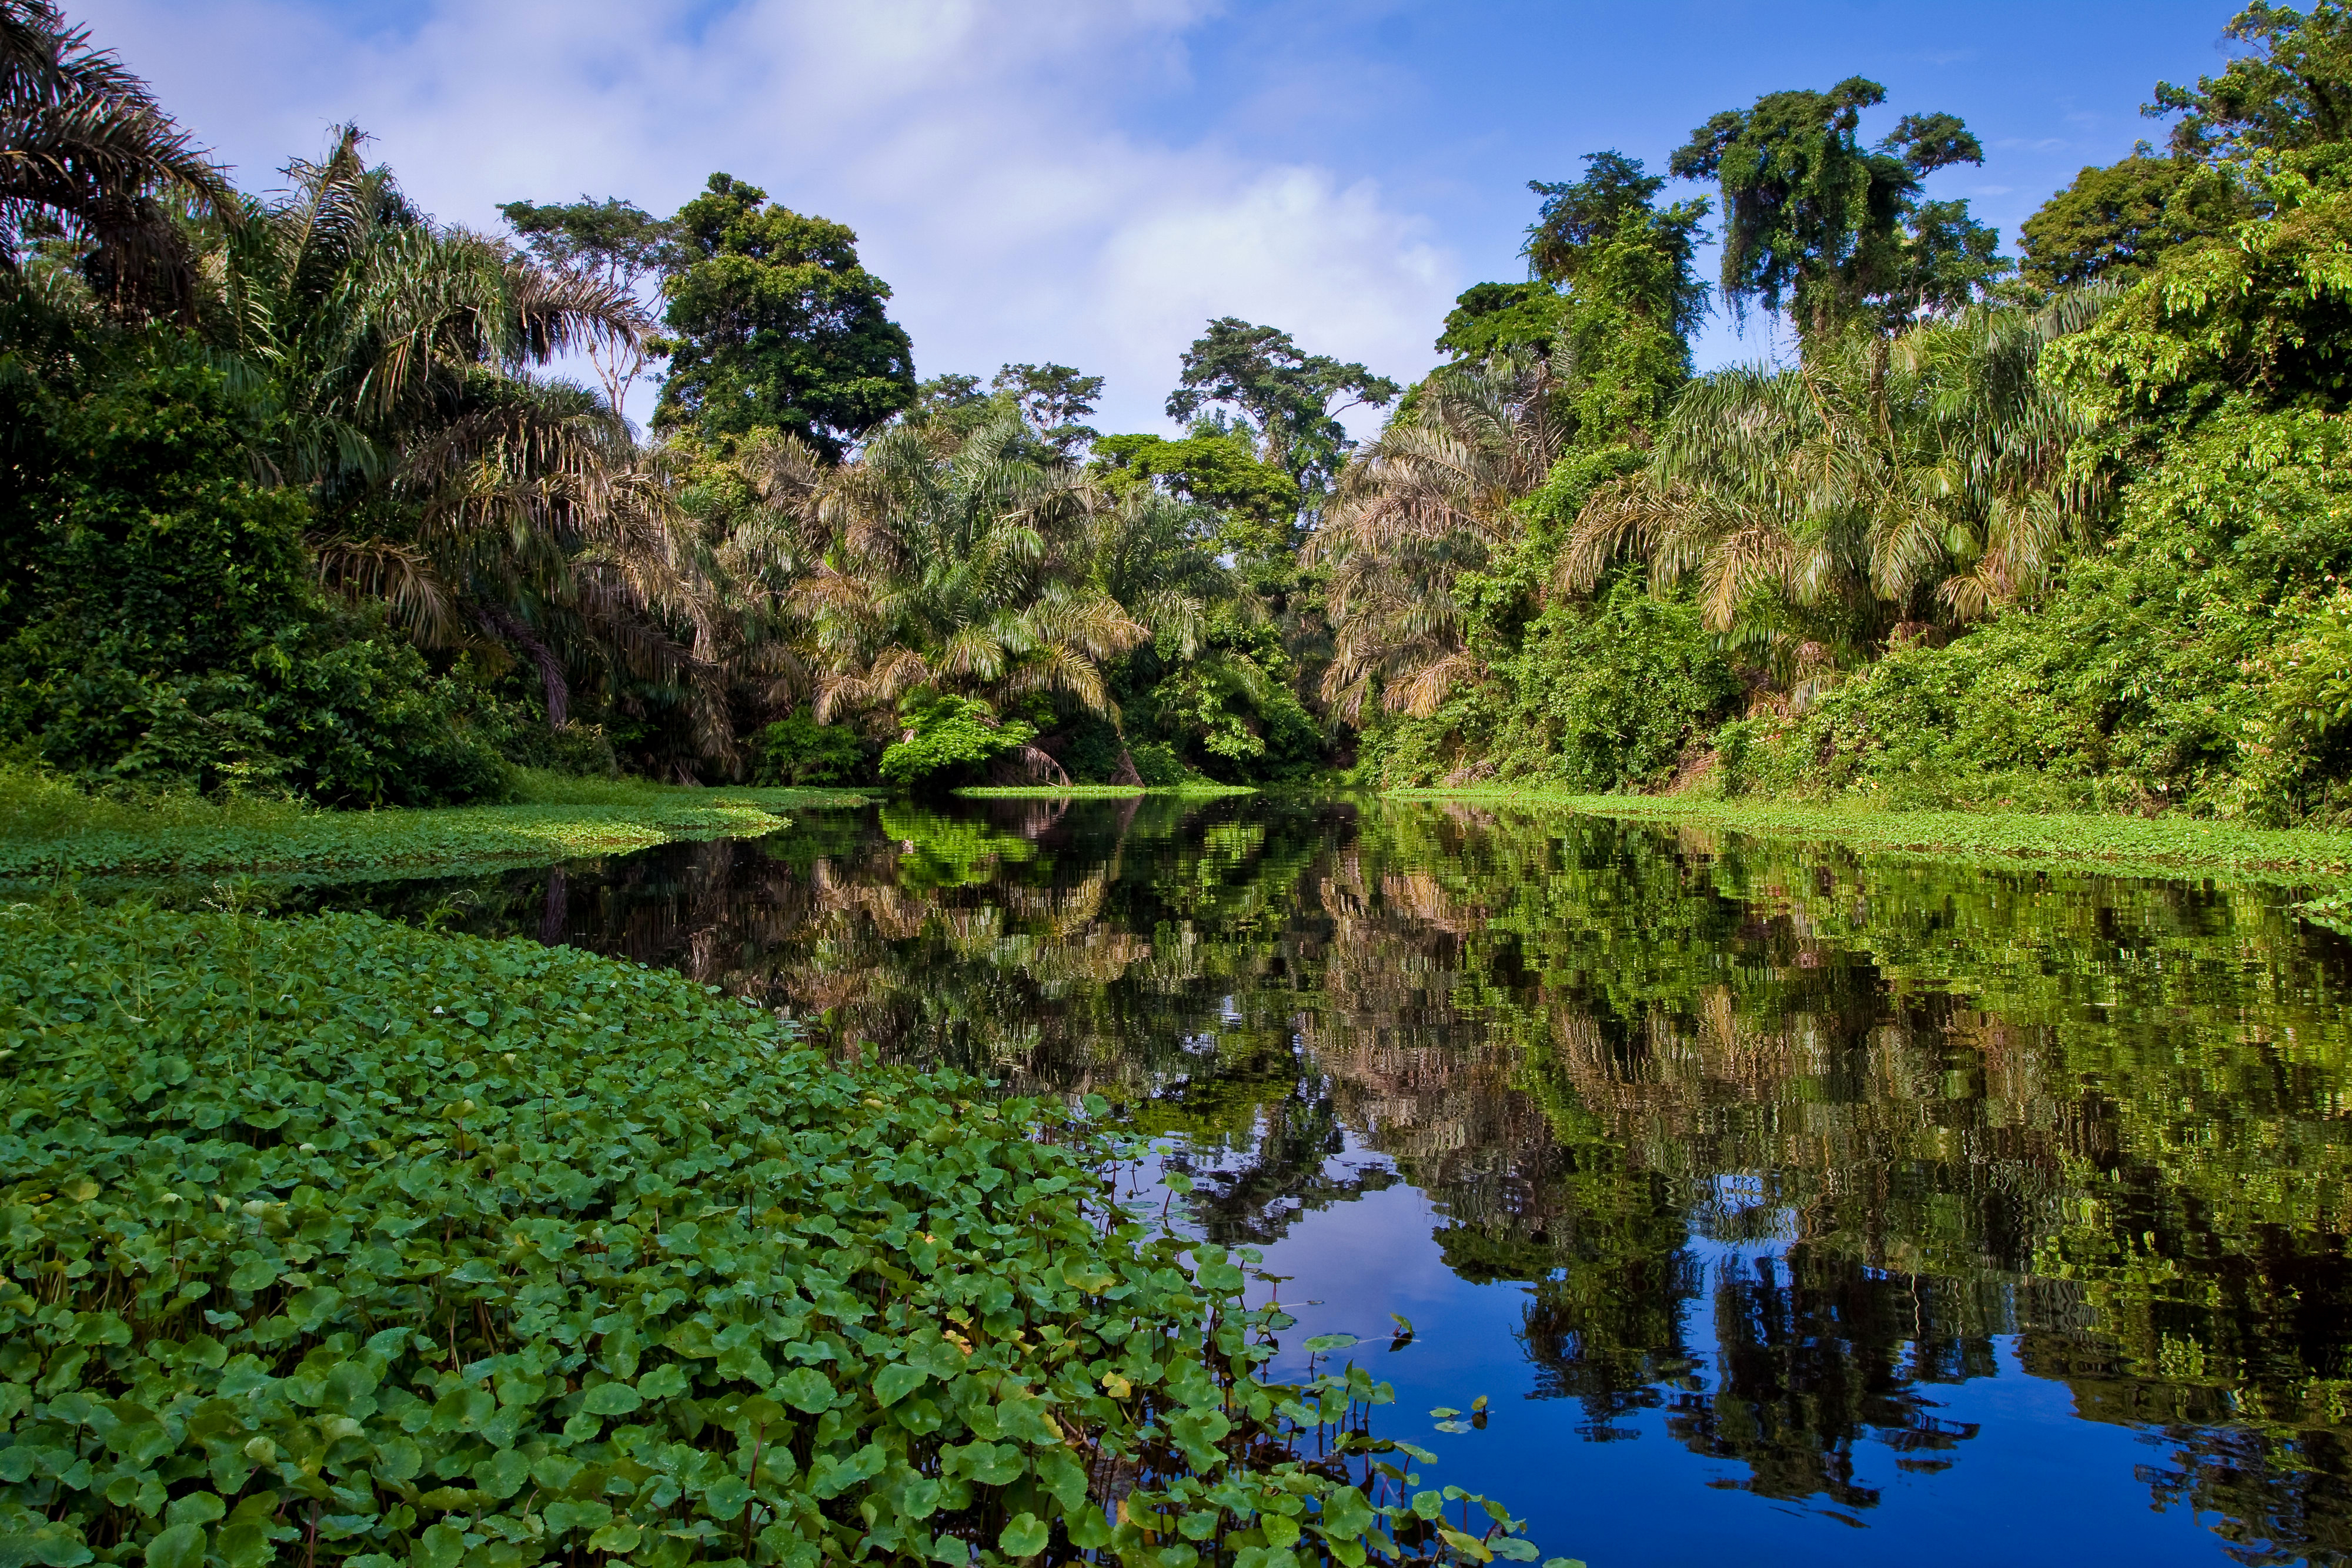 На каком материке расположен дождевой лес сельва. Тропические леса амазонки в Бразилии. Бразилия тропические леса Сельва. Южная Америка джунгли амазонки.